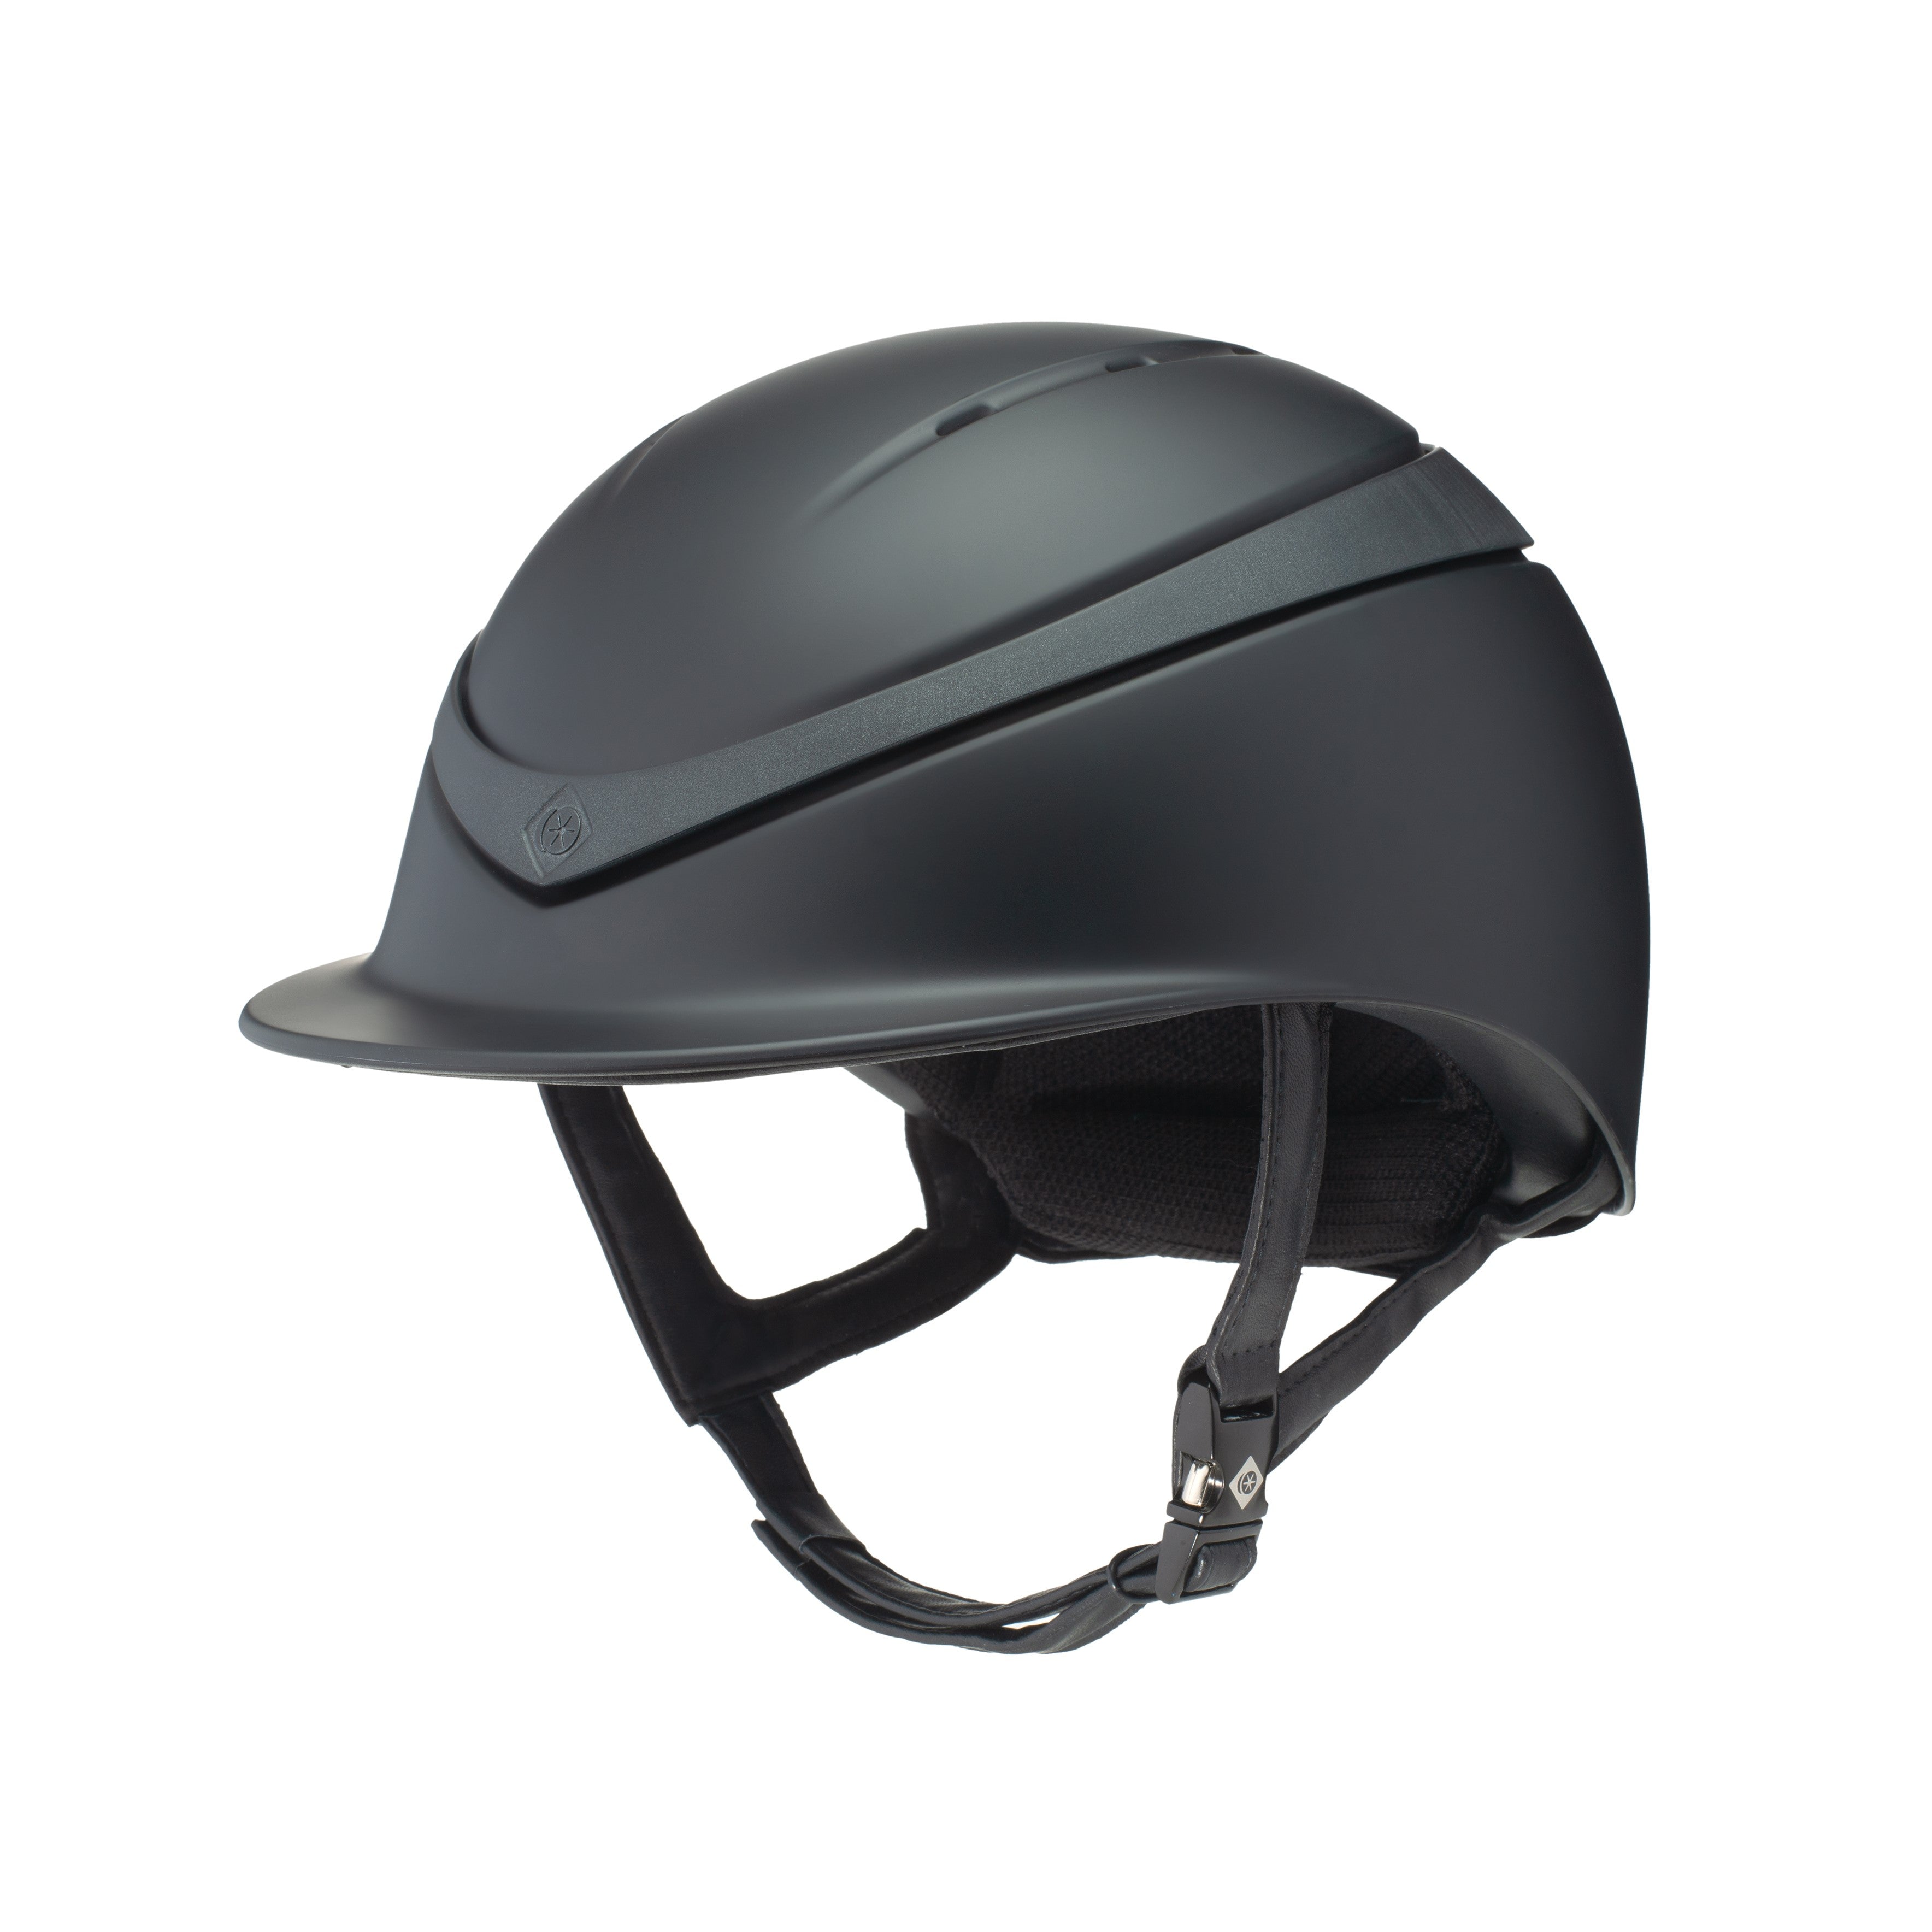 Charles Owen Halo Helmet | IVC Carriage